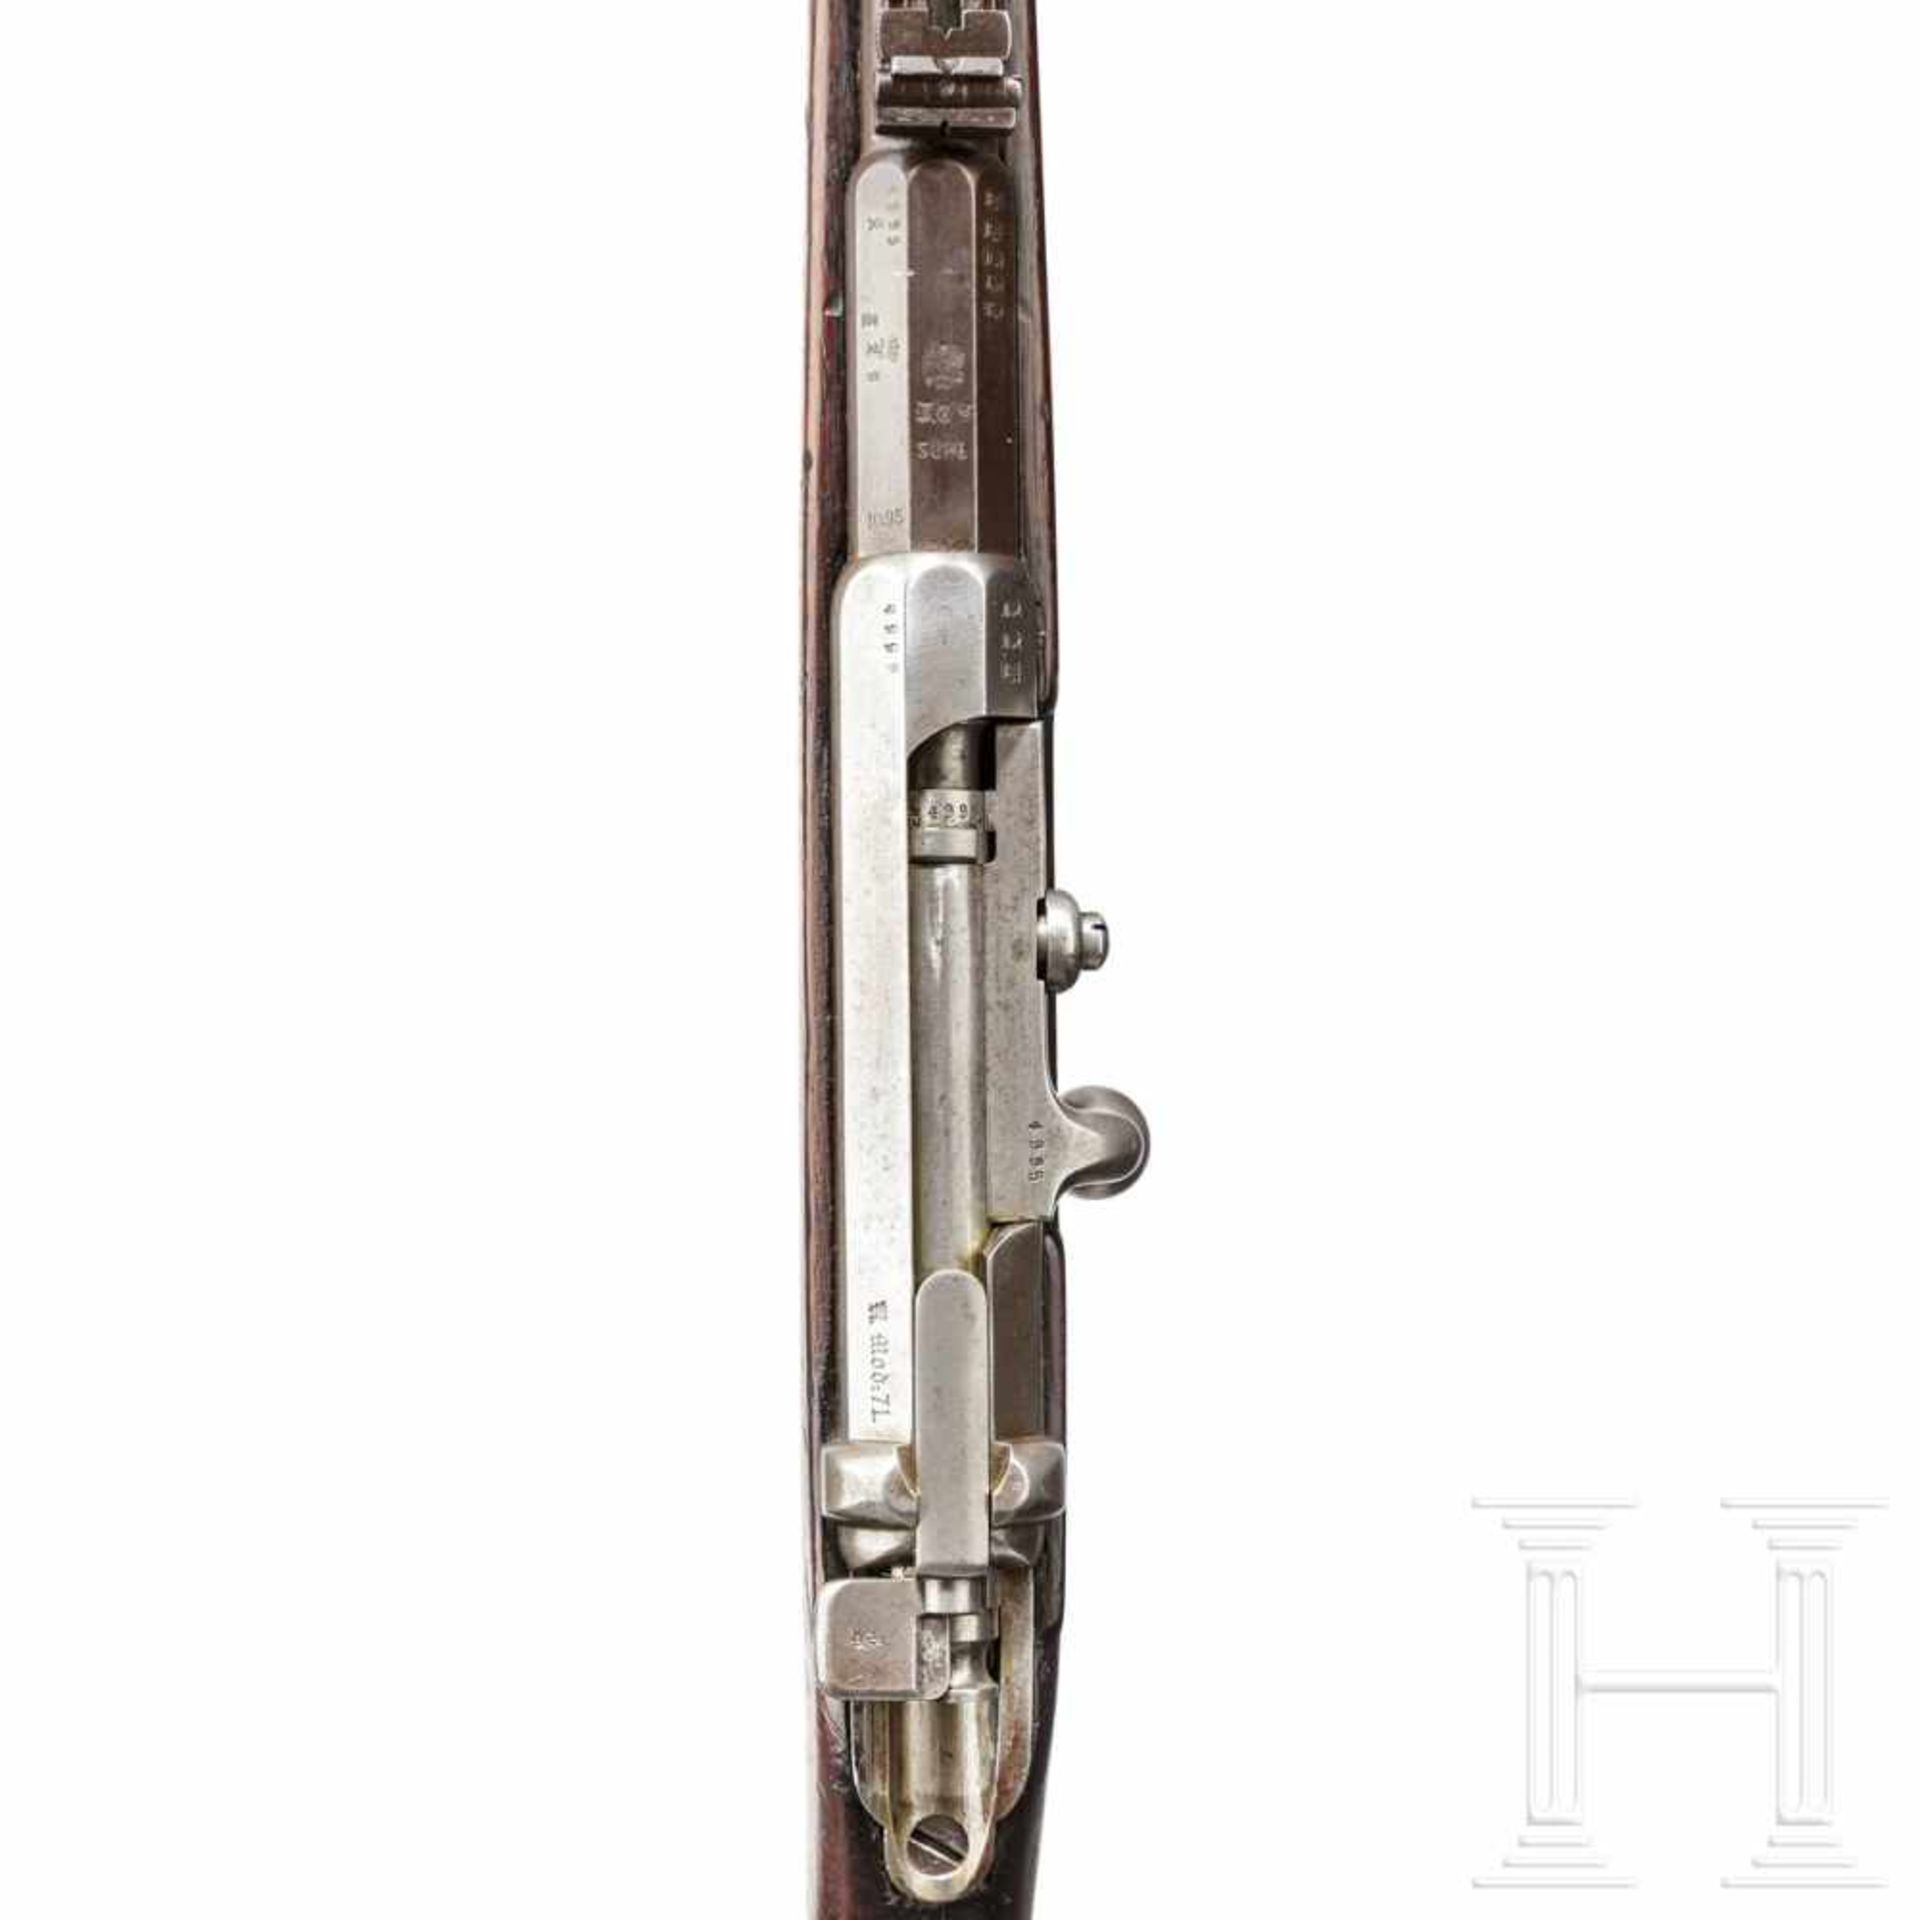 A carbine 71, V.C.S. SuhlKal. 11,15x60R, Nr. 4995, nummerngleich inkl. Schrauben. Lauf leicht - Bild 3 aus 3